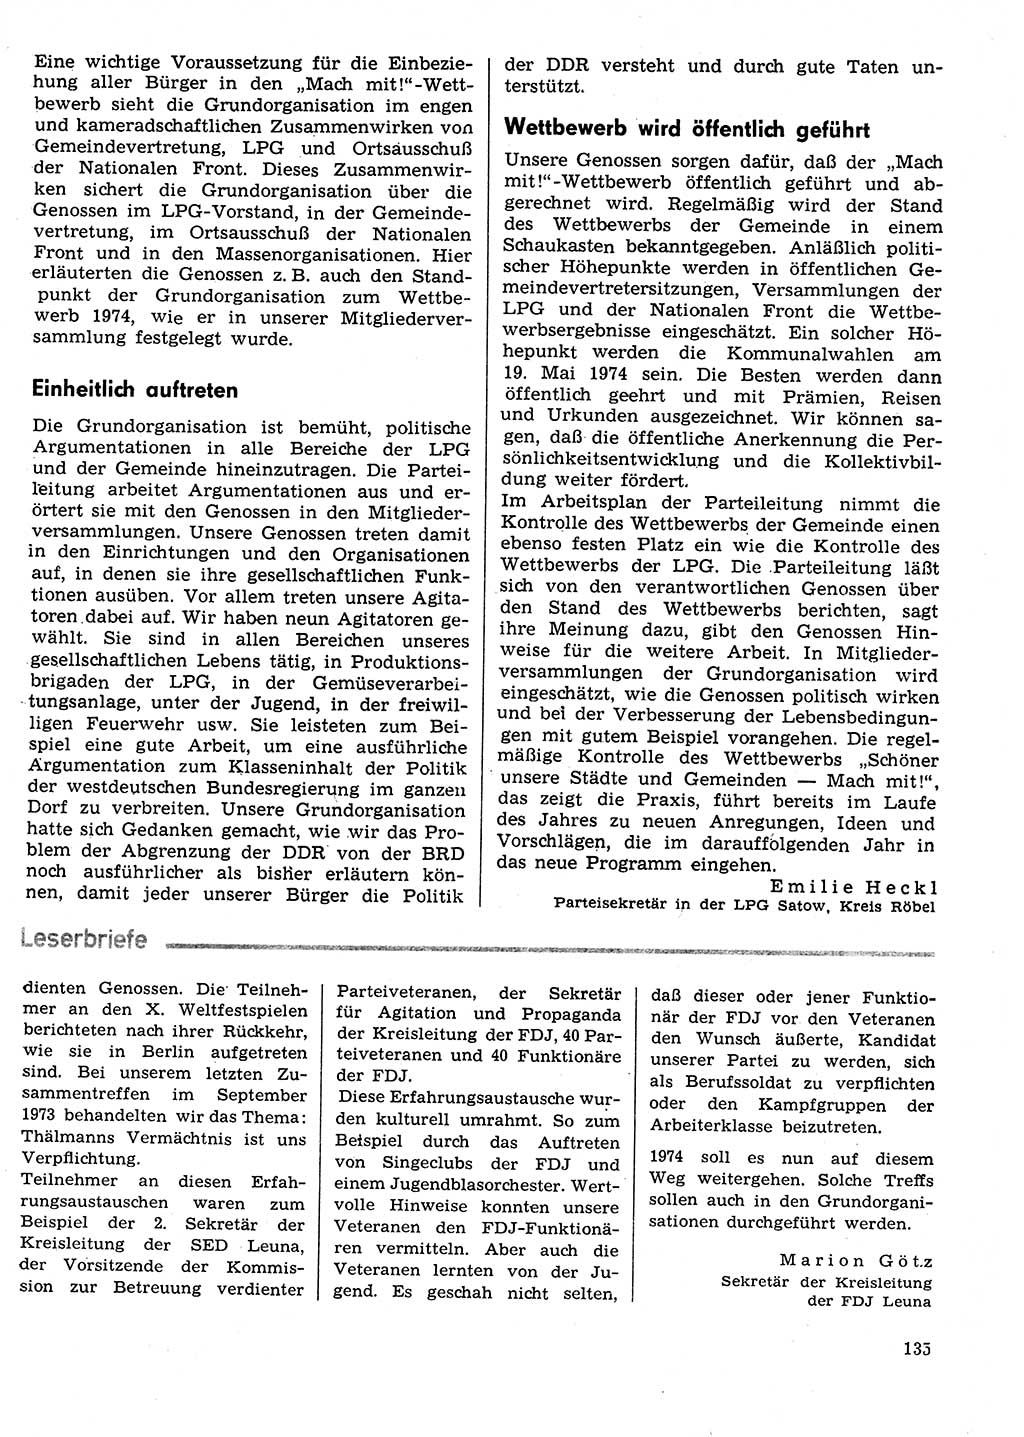 Neuer Weg (NW), Organ des Zentralkomitees (ZK) der SED (Sozialistische Einheitspartei Deutschlands) für Fragen des Parteilebens, 29. Jahrgang [Deutsche Demokratische Republik (DDR)] 1974, Seite 135 (NW ZK SED DDR 1974, S. 135)